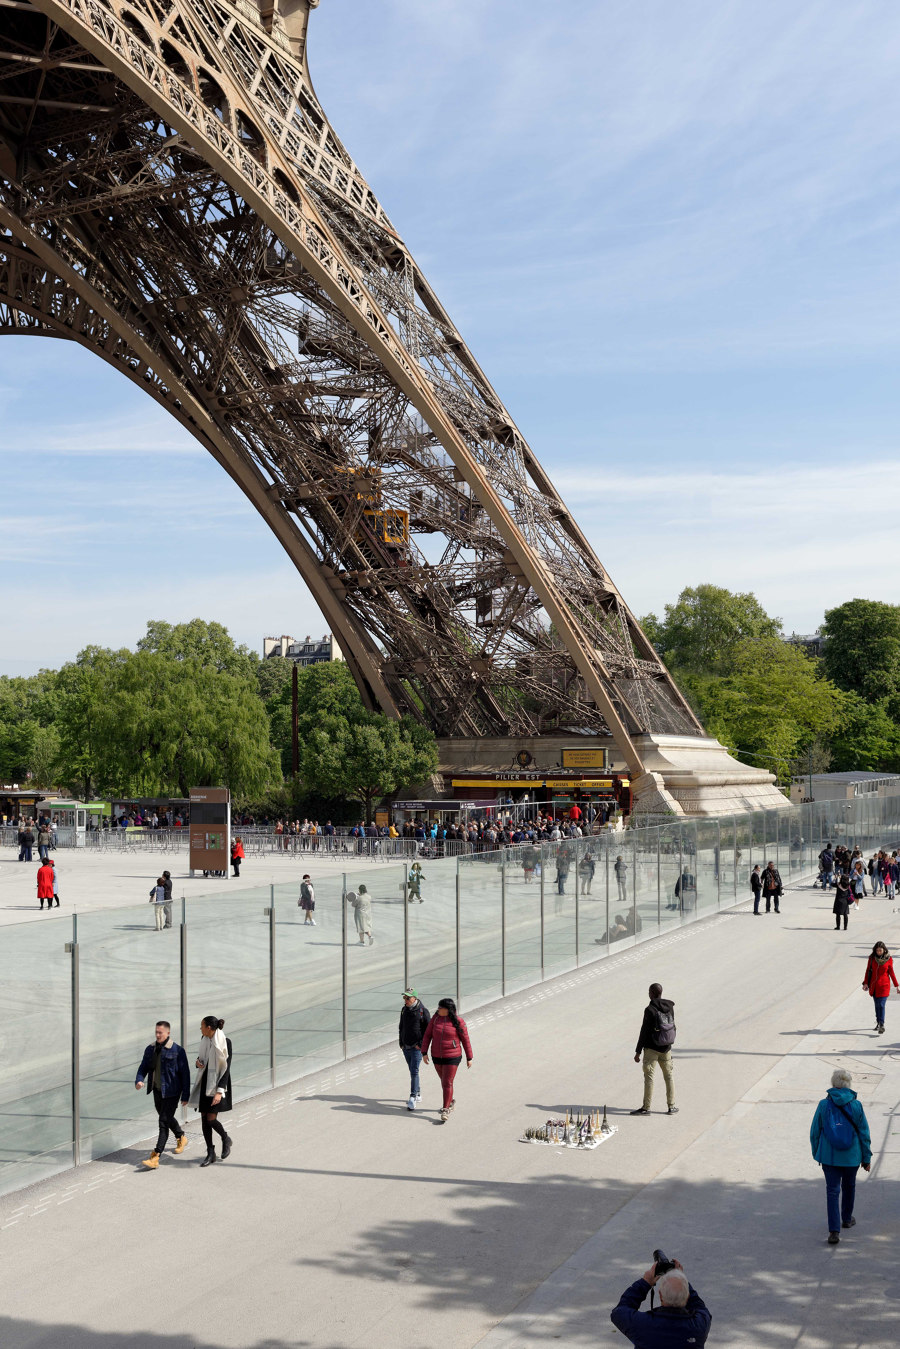 Eiffel Tower Transparency and Security von Dietmar Feichtinger Architectes | Infrastrukturbauten